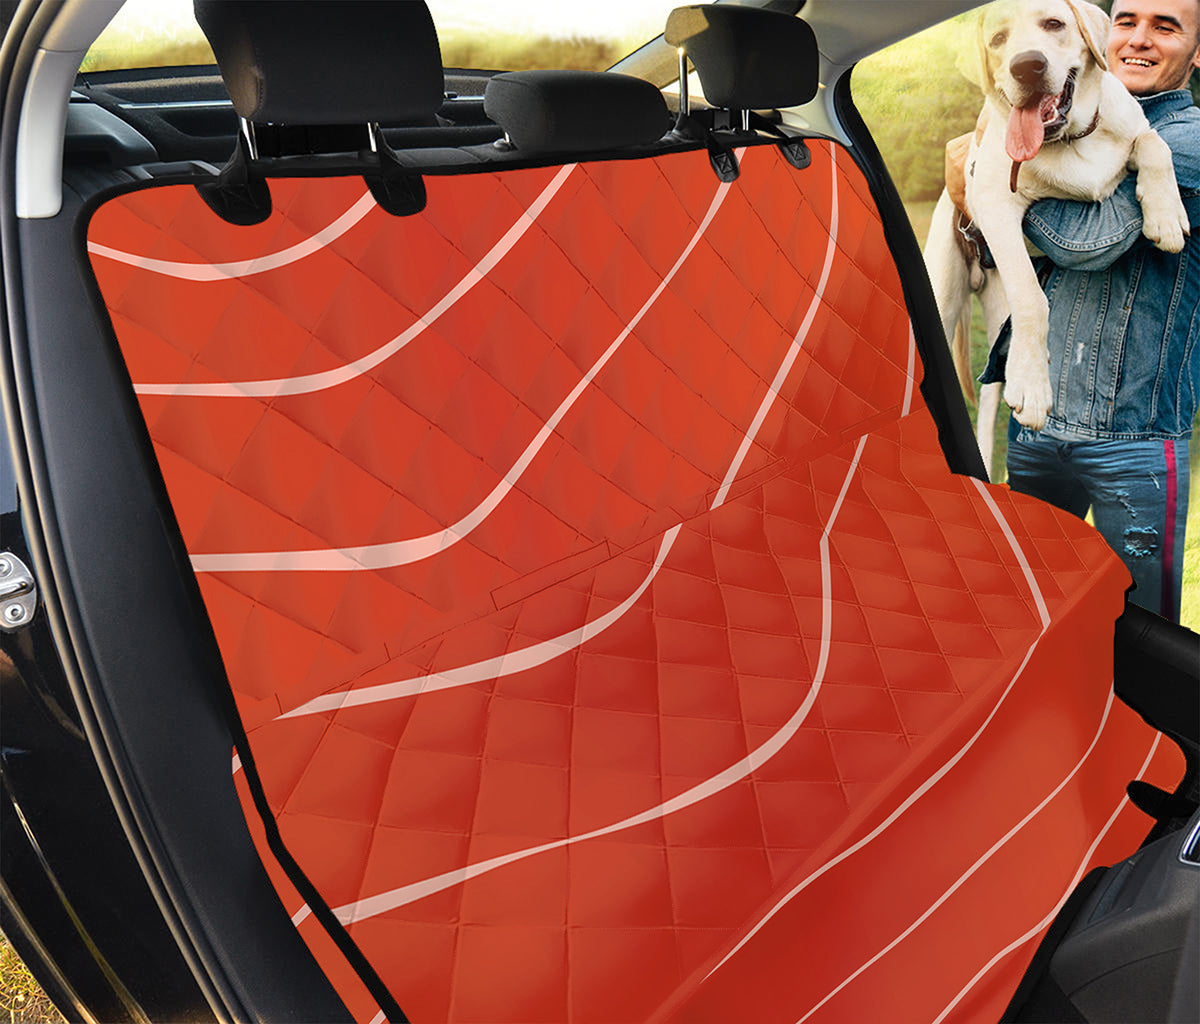 Salmon Artwork Print Pet Car Back Seat Cover